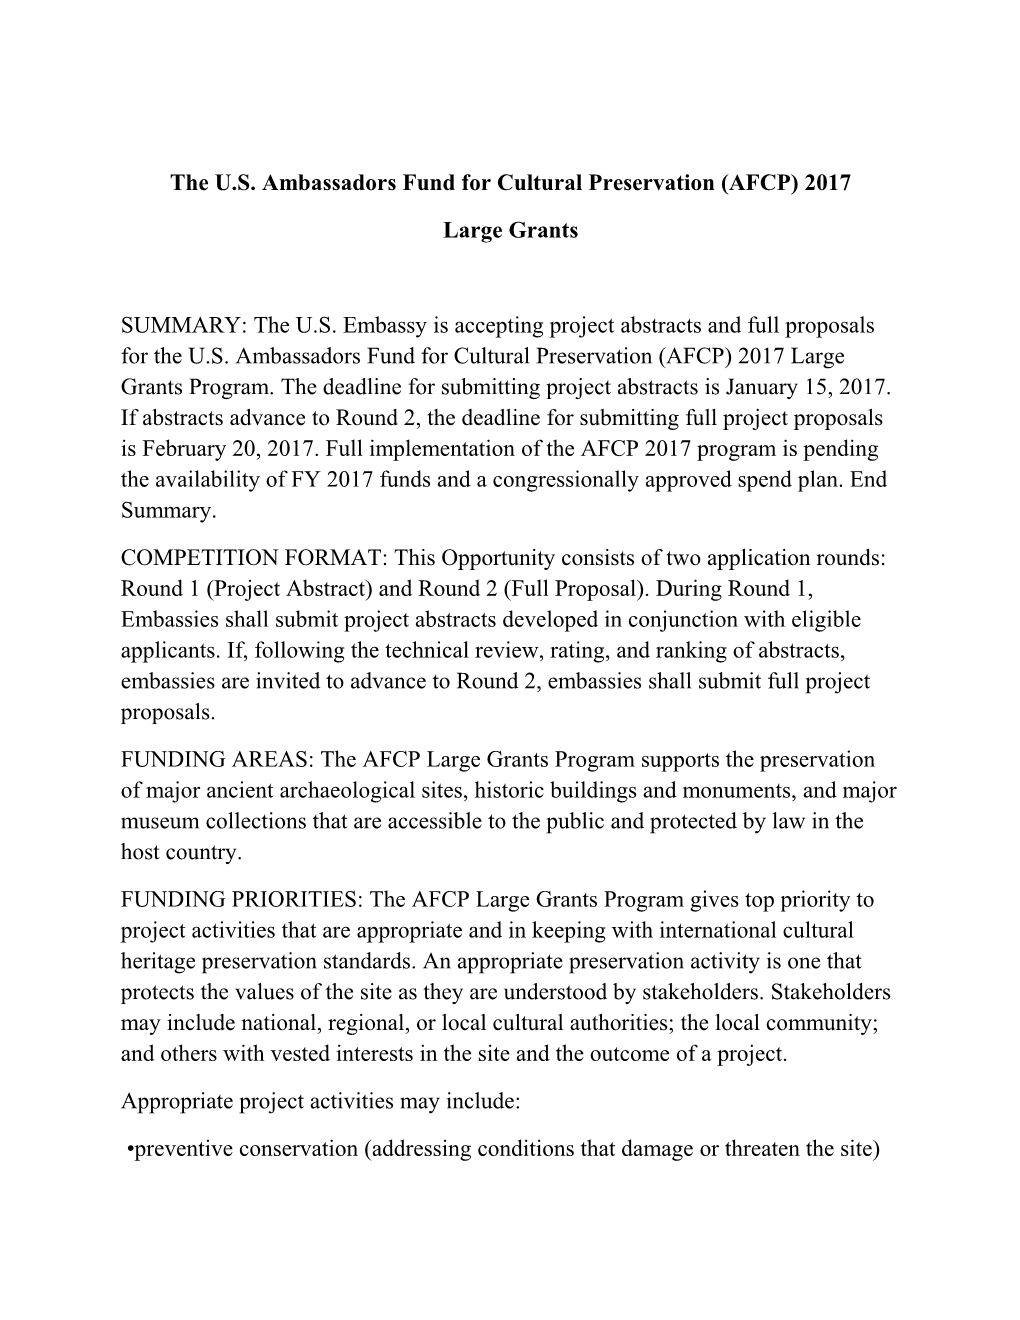 The U.S. Ambassadors Fund for Cultural Preservation (AFCP) 2017